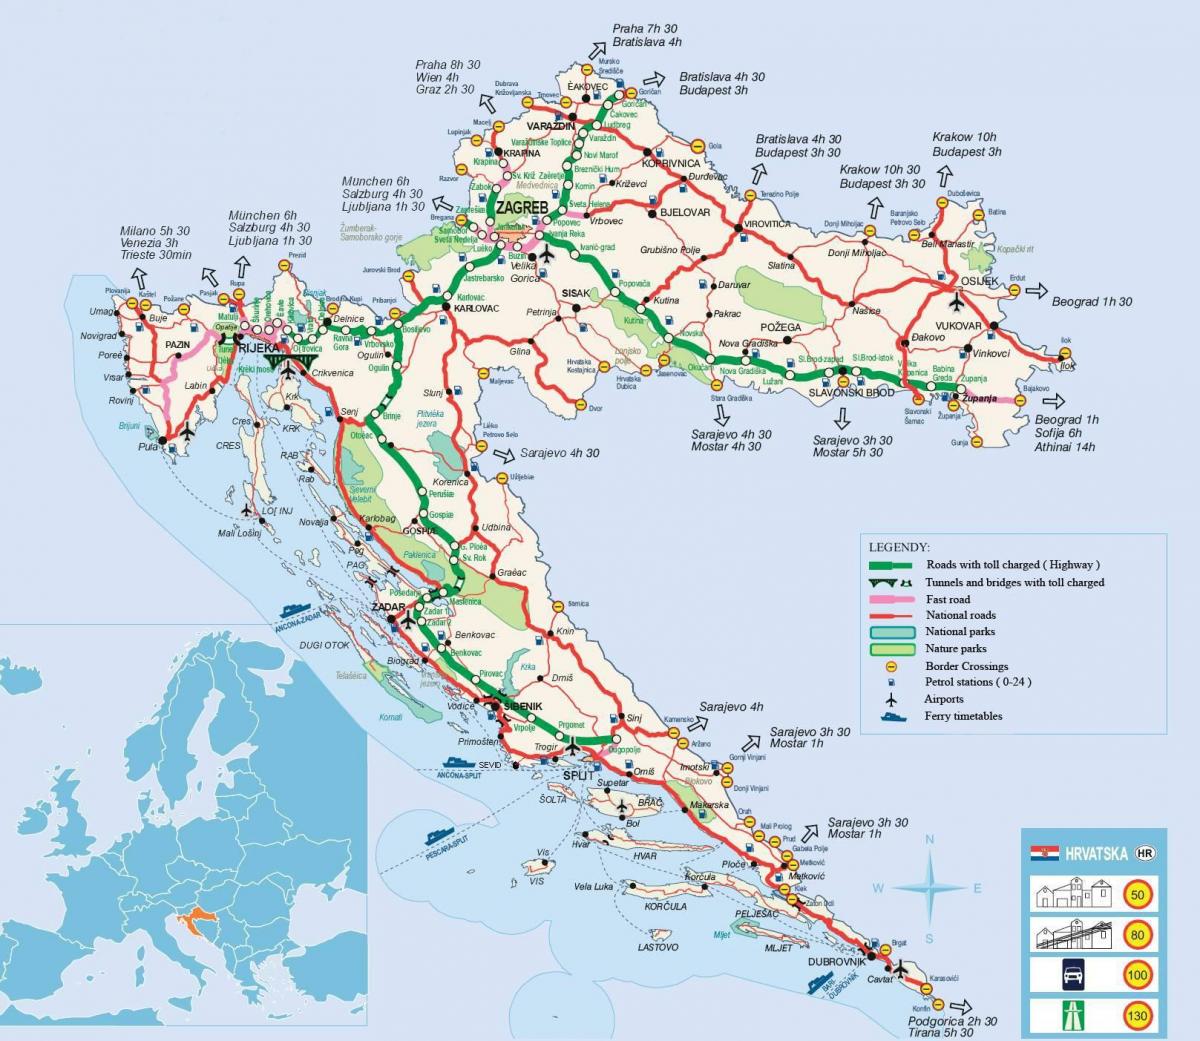 Mappa stradale della Croazia